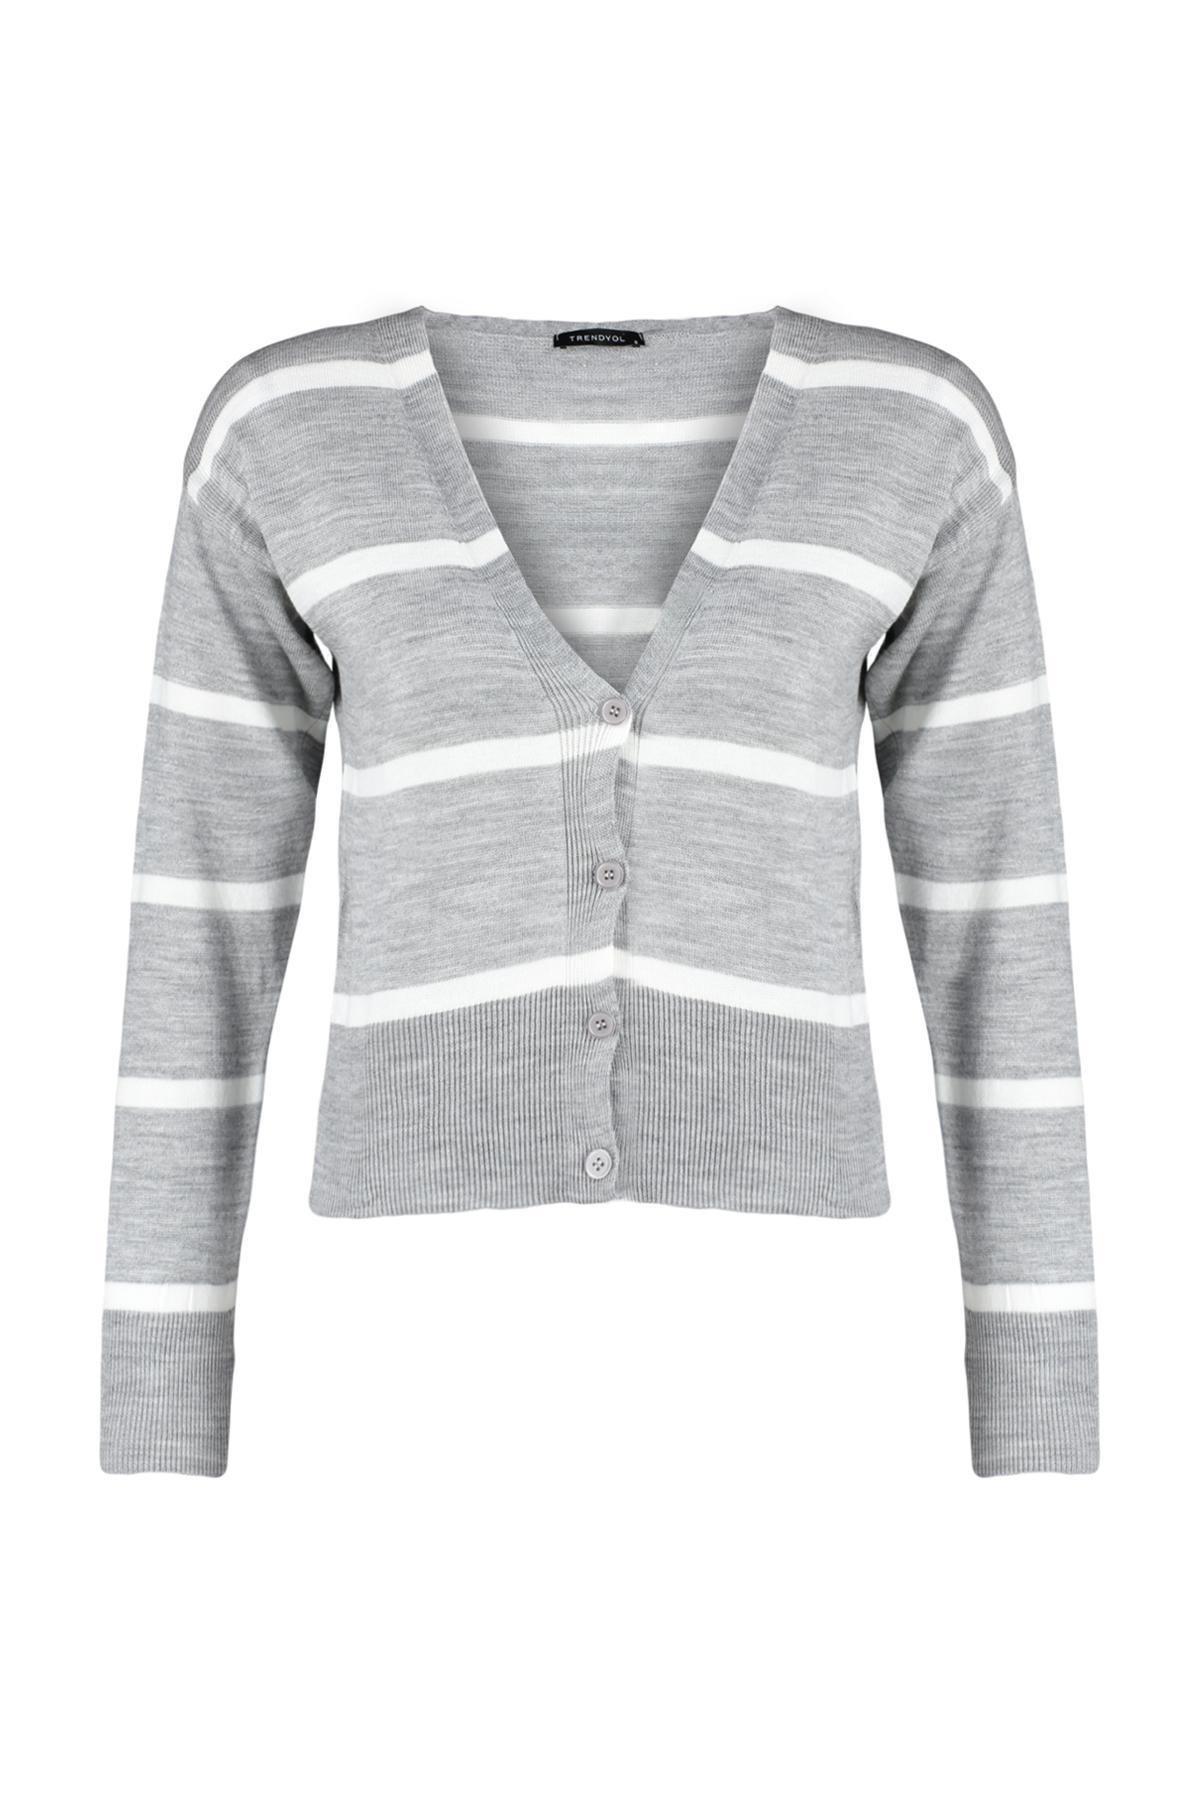 Trendyol - Grey V-Neck Striped Knitted Cardigan